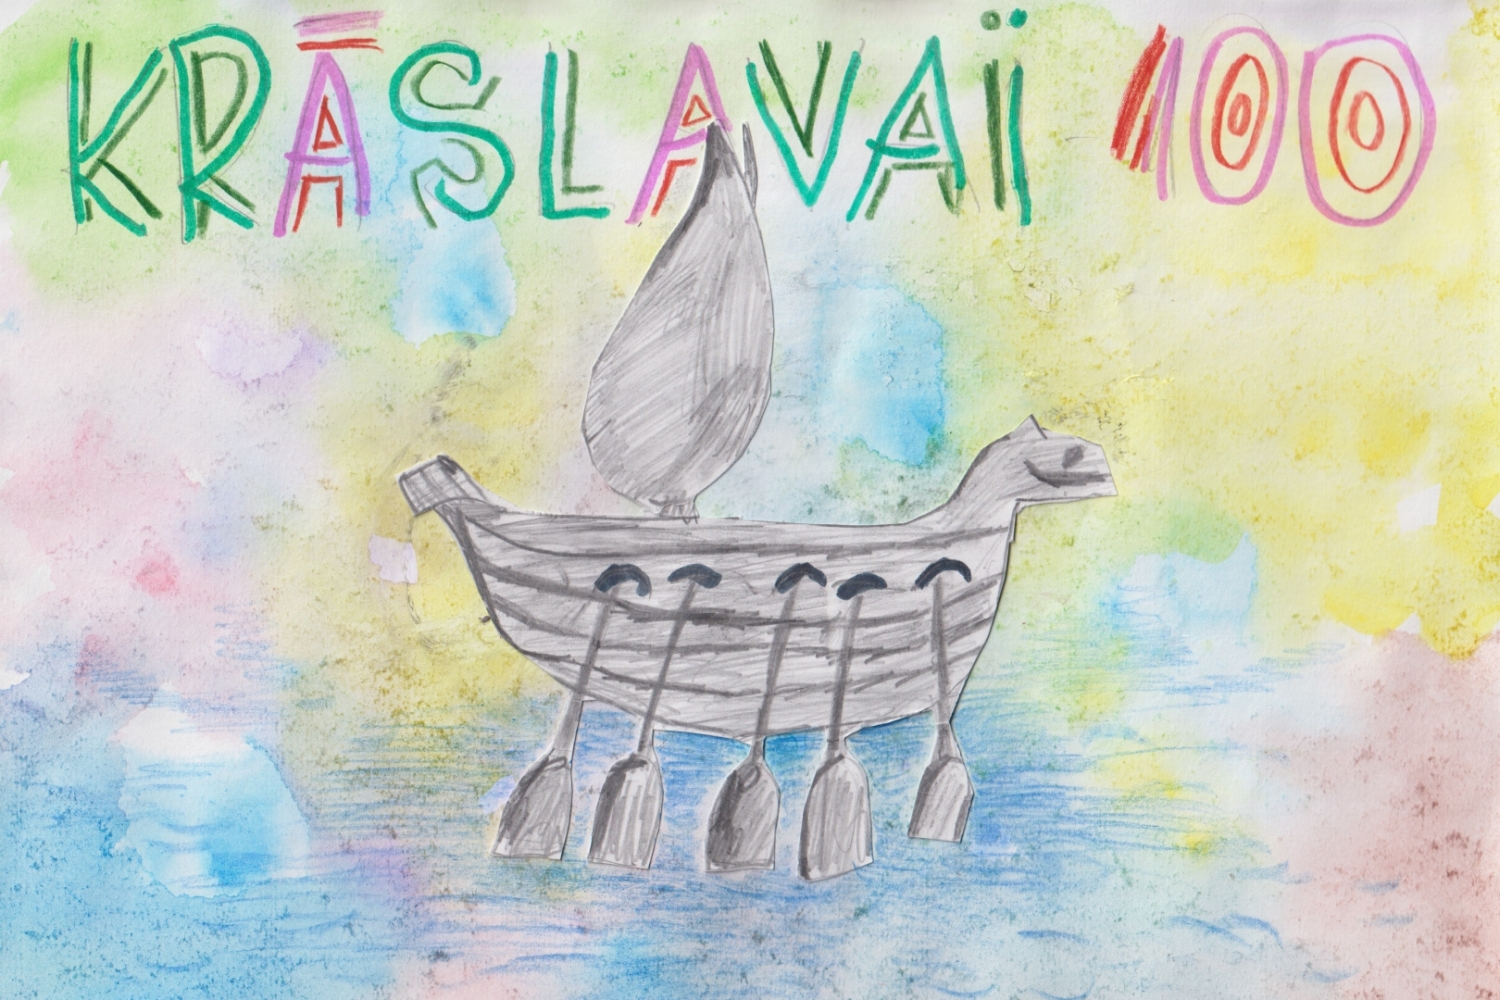 Bērna zīmējums; uz krāsaina fona uzraksts "Krāslavai 100" un uzzīmēta Krāslavas ģērboņa laiva